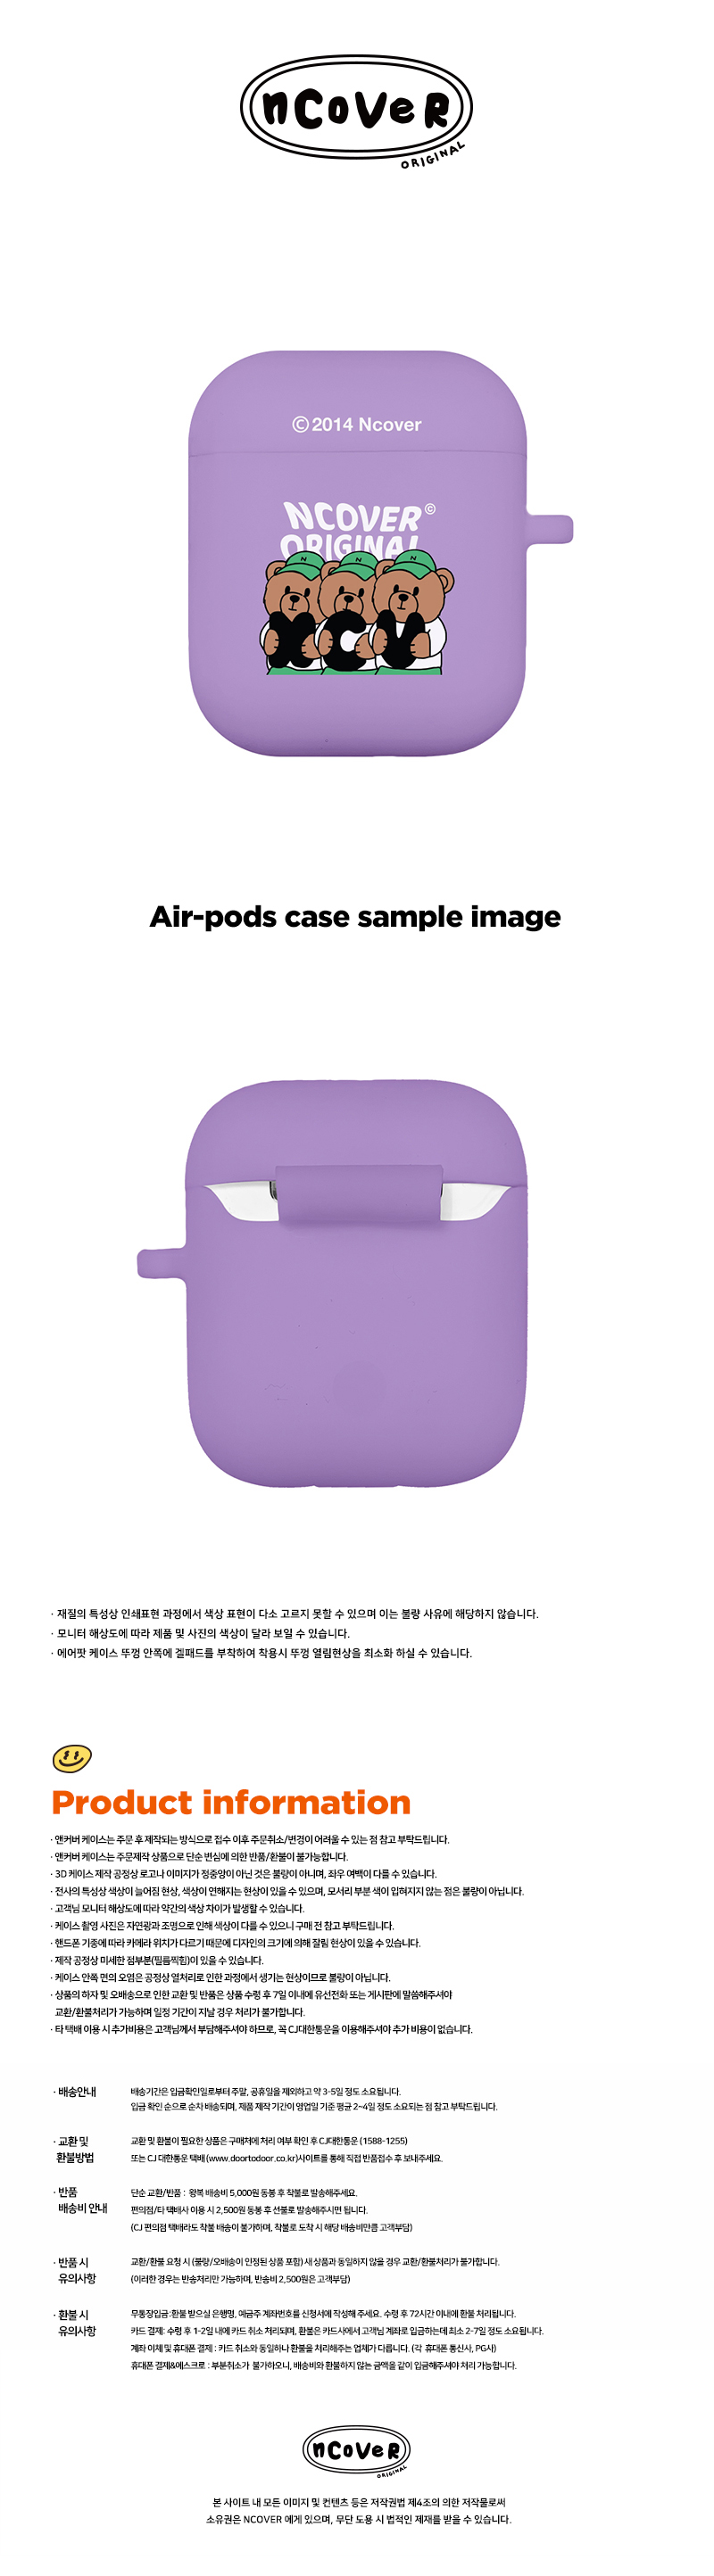 [호환용] Ncv alphabet bruin-purple(airpods jelly)  15,000원 - 바이인터내셔널주식회사 디지털, 이어폰/헤드폰, 이어폰/헤드폰 액세서리, 에어팟/에어팟프로 케이스 바보사랑 [호환용] Ncv alphabet bruin-purple(airpods jelly)  15,000원 - 바이인터내셔널주식회사 디지털, 이어폰/헤드폰, 이어폰/헤드폰 액세서리, 에어팟/에어팟프로 케이스 바보사랑